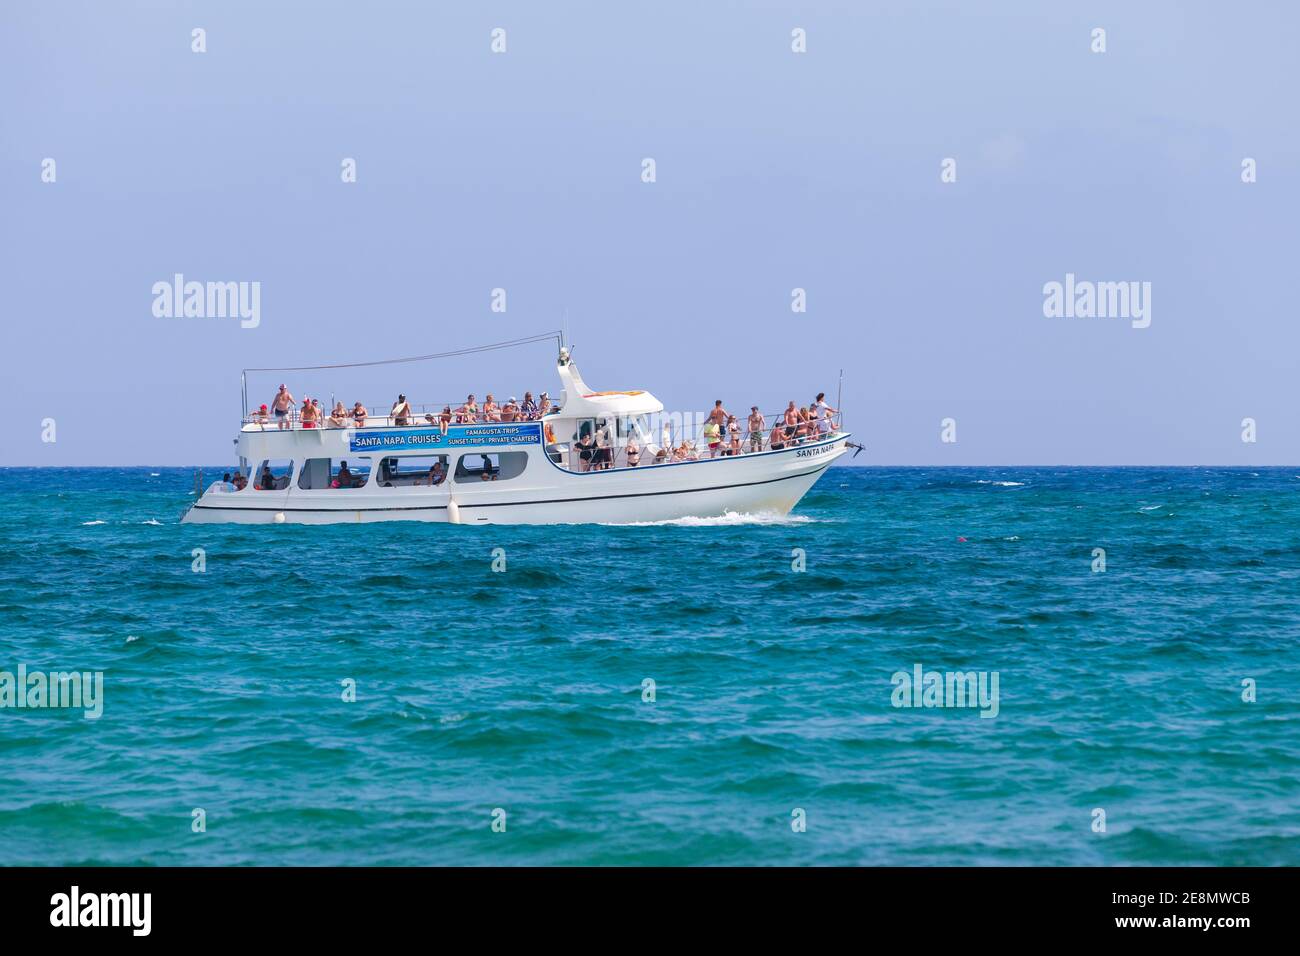 Ayia Napa, Chipre - 12 de junio de 2018: El barco de placer lleno de turistas va en el agua azul del mar en el día soleado Foto de stock